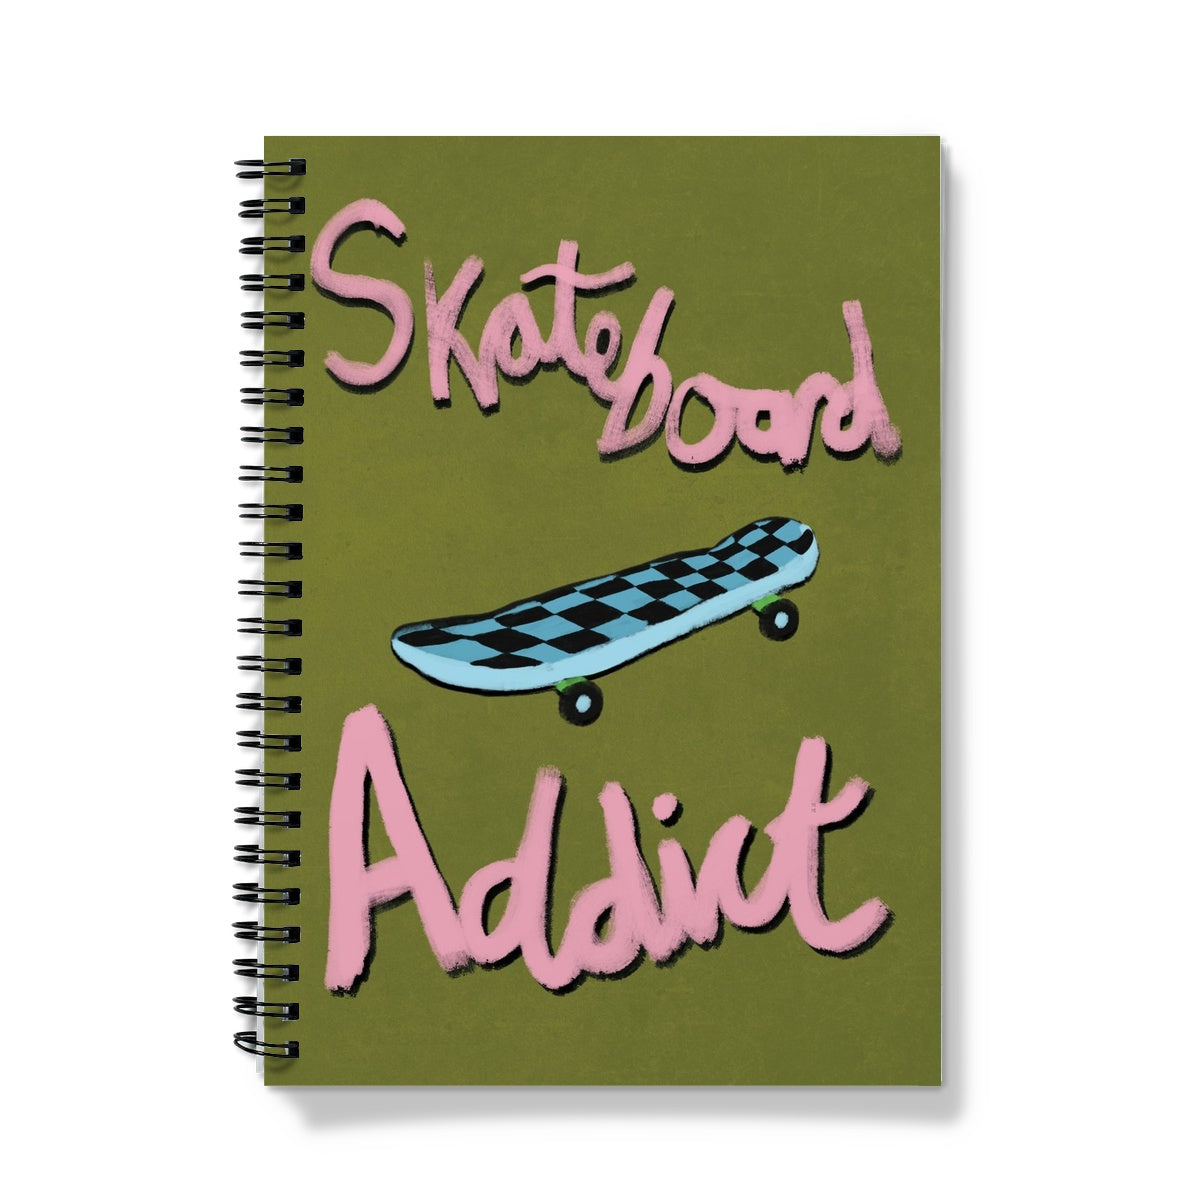 Skateboard Addict - Olive Green, Pink, Blue Notebook